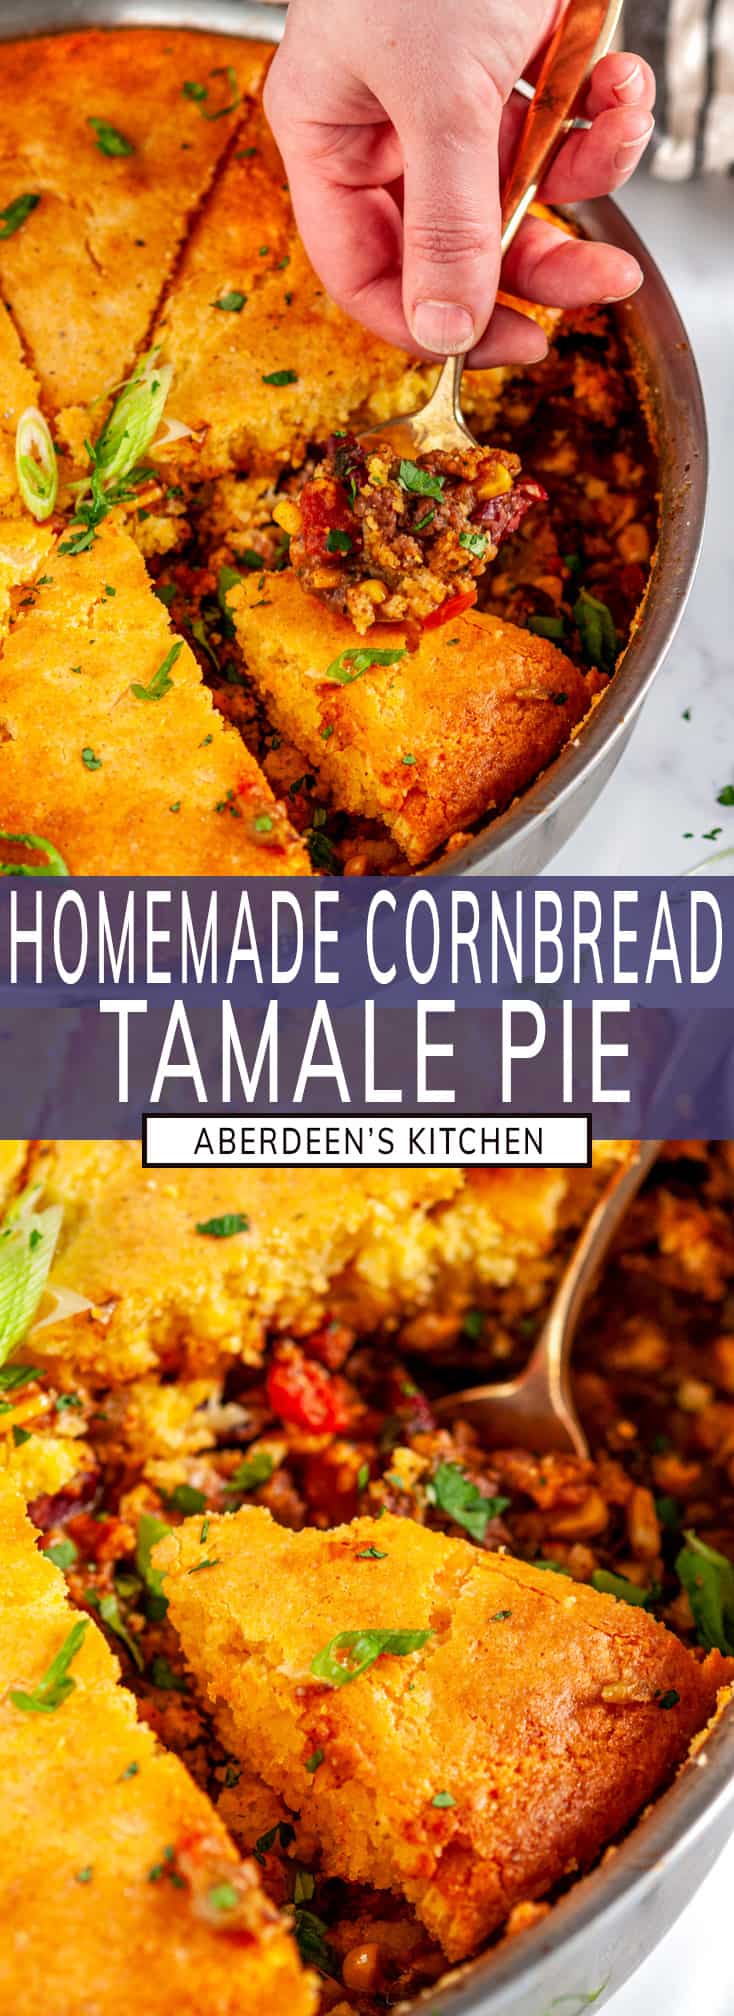 Homemade Cornbread Tamale Pie - Aberdeen's Kitchen